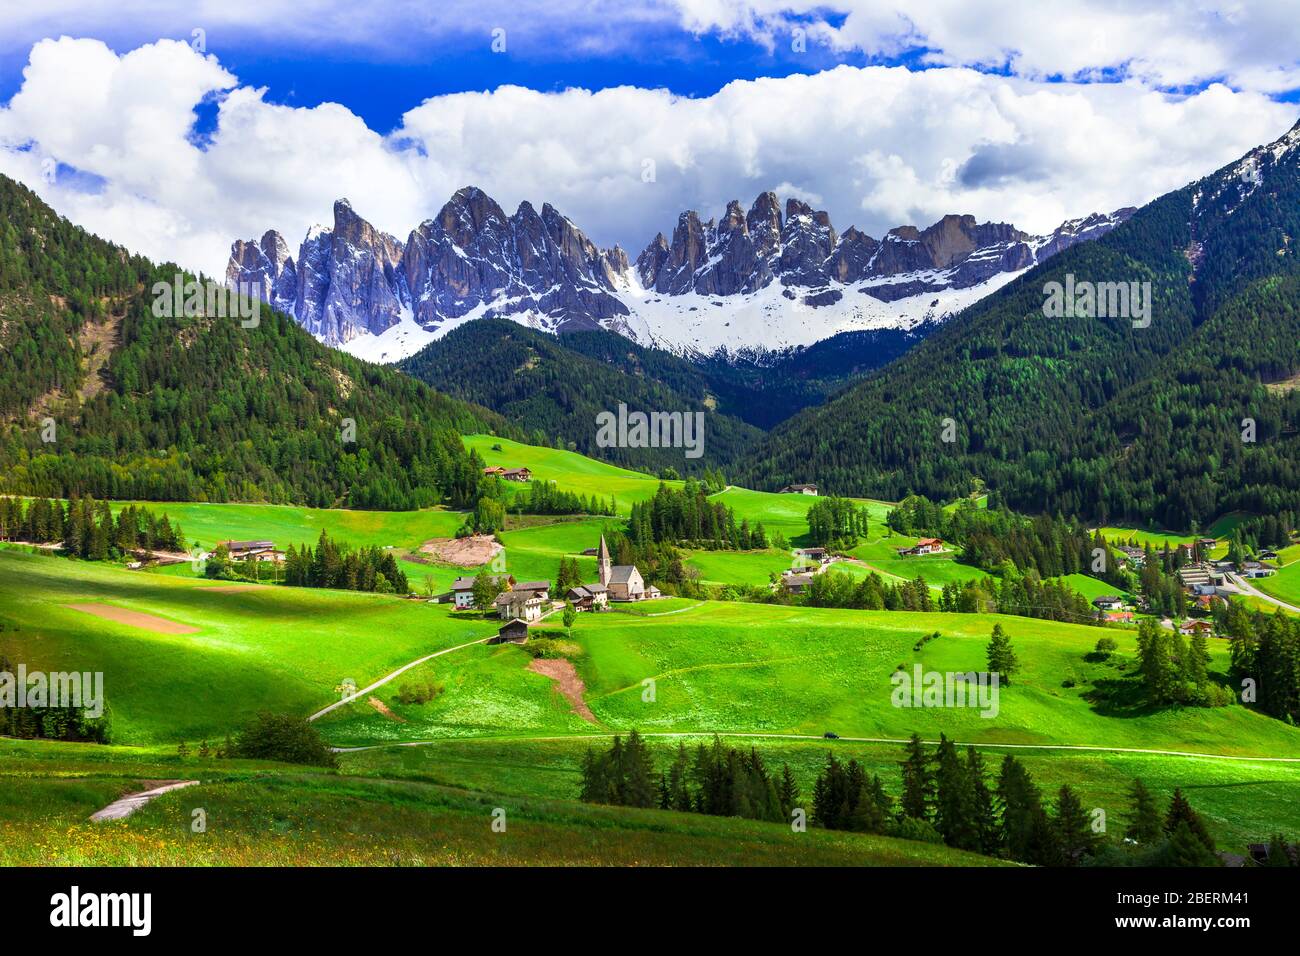 Impressive alpine landscape in Val di Funes,Italy. Stock Photo